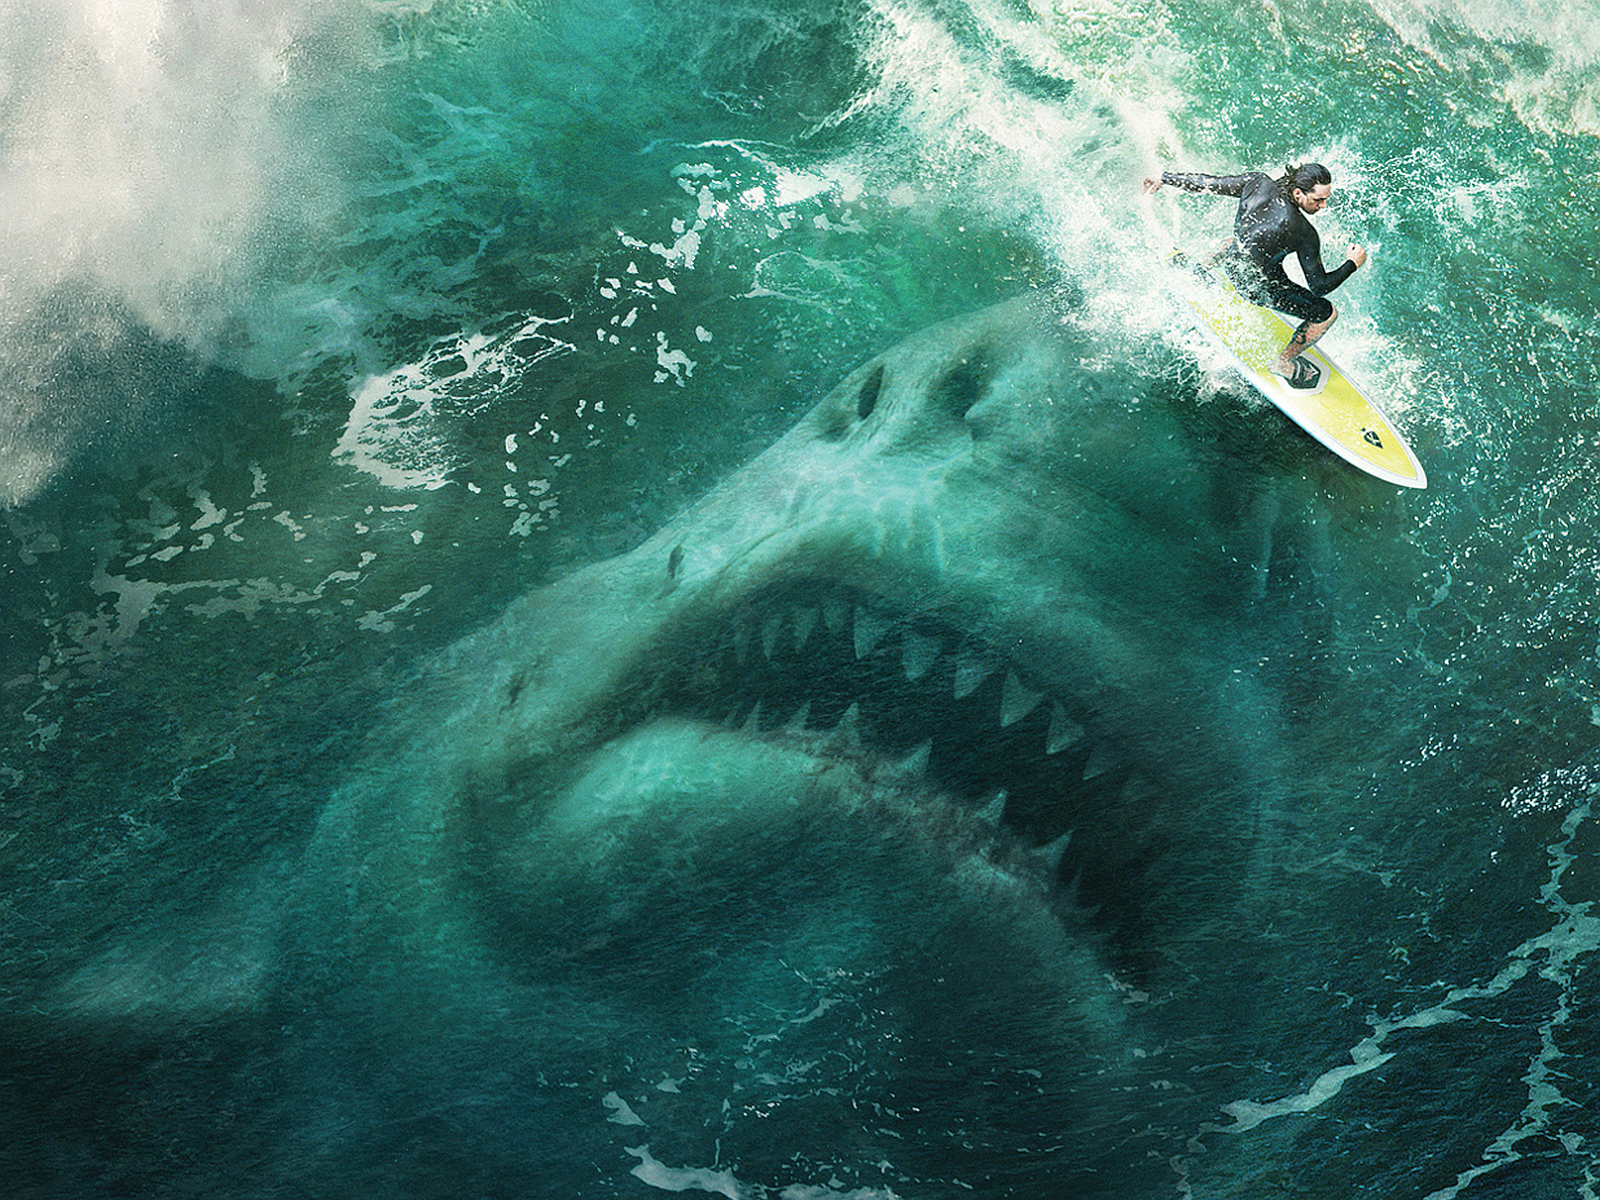 the meg, shark, surfer, movie wallpaper for mobile